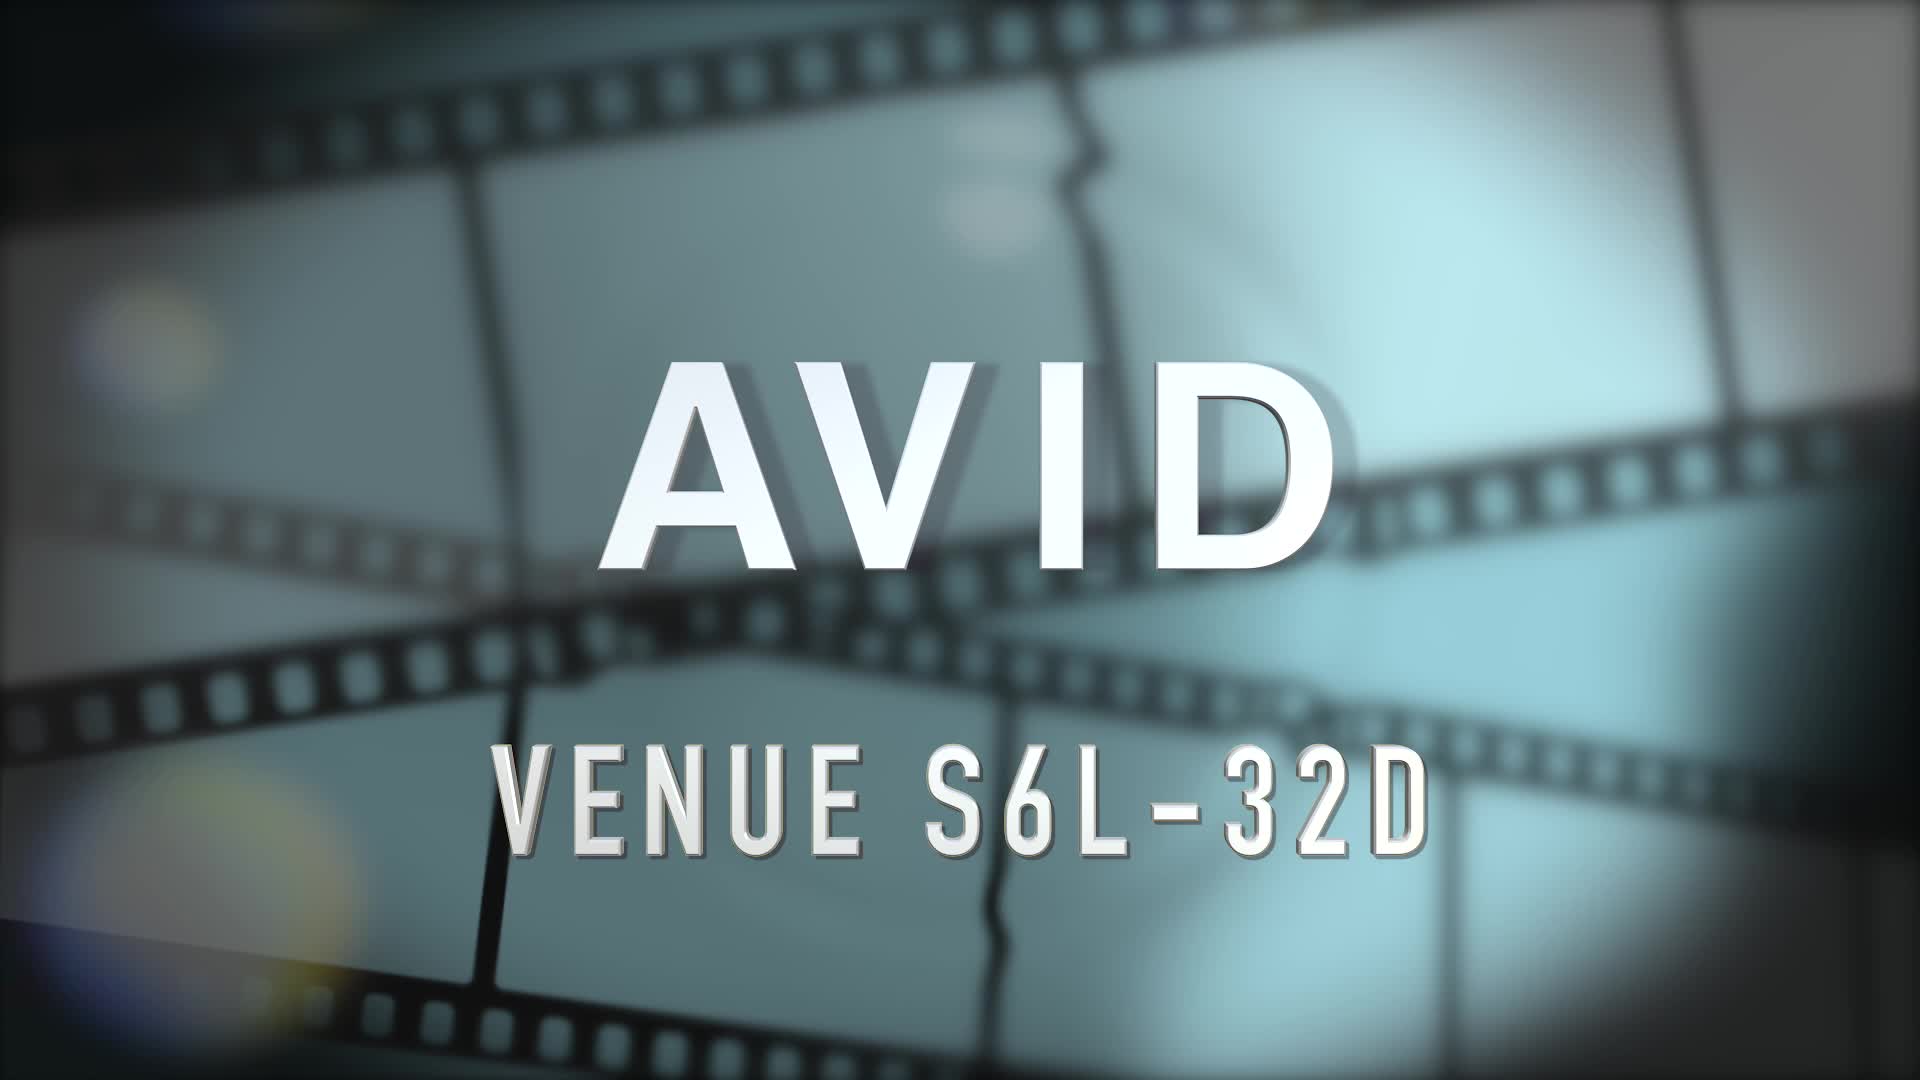 Avid VENUE S6L-32D Part 4